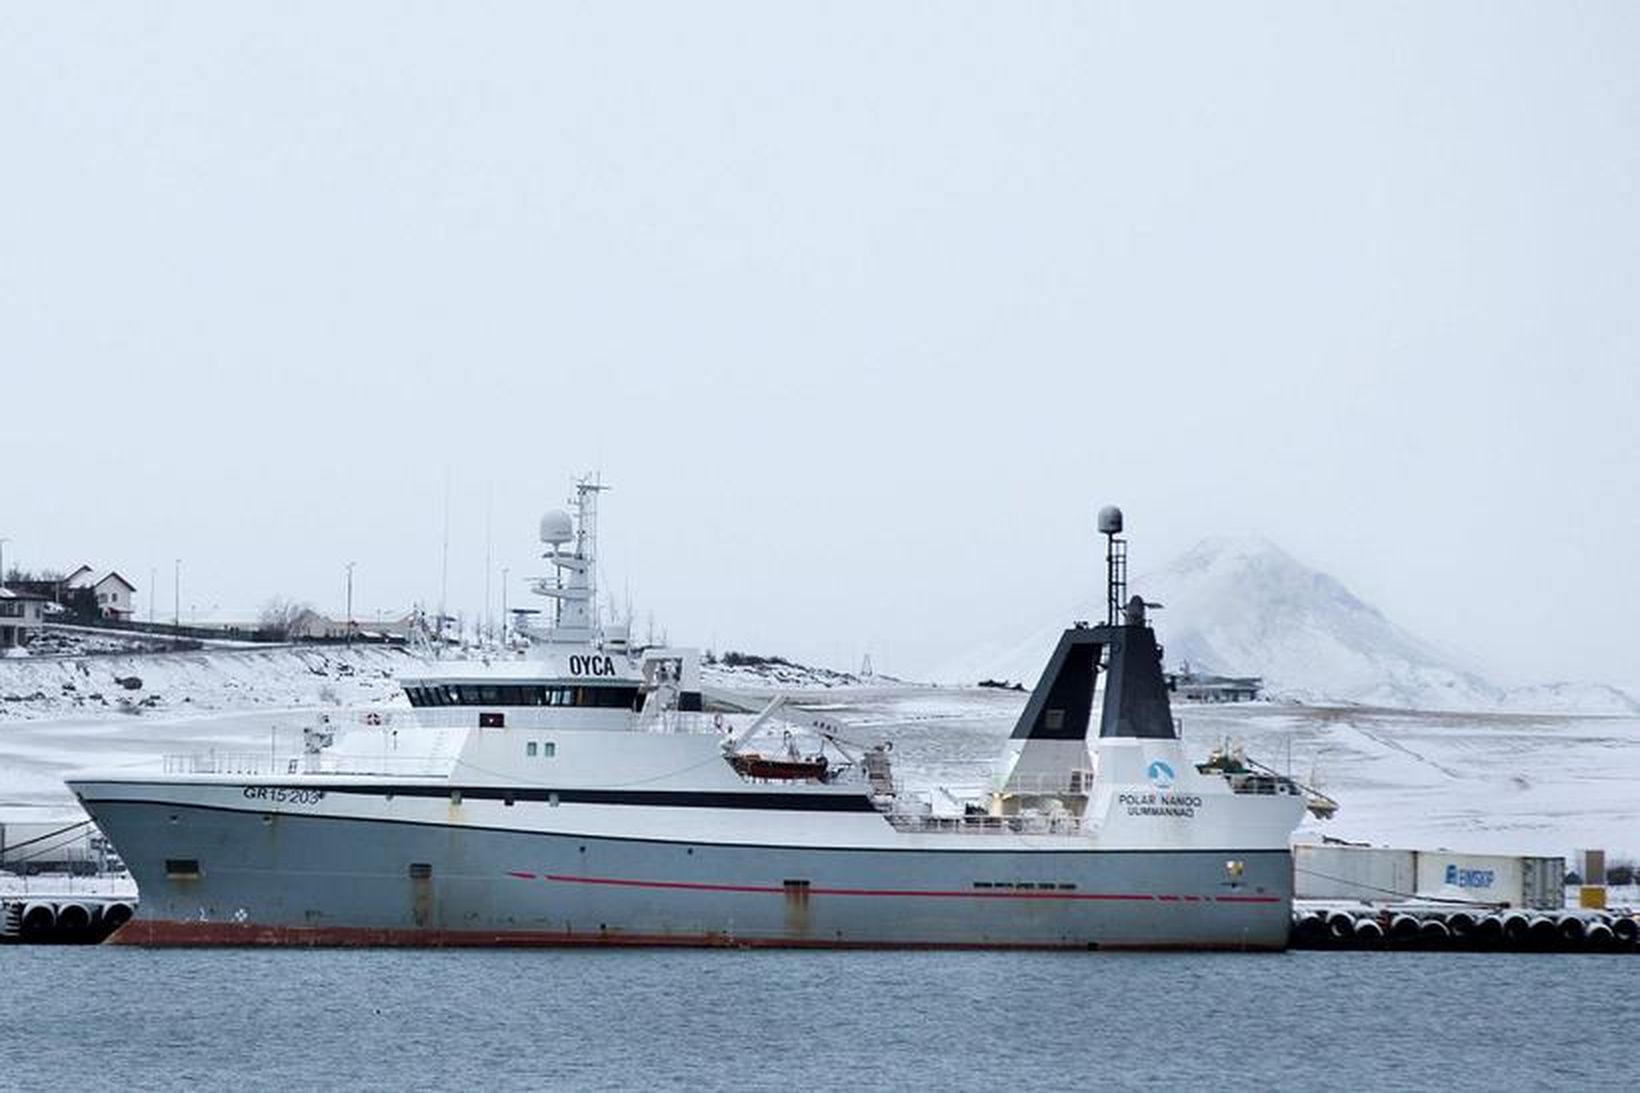 Polar Nanoq í Hafnarfjarðarhöfn.